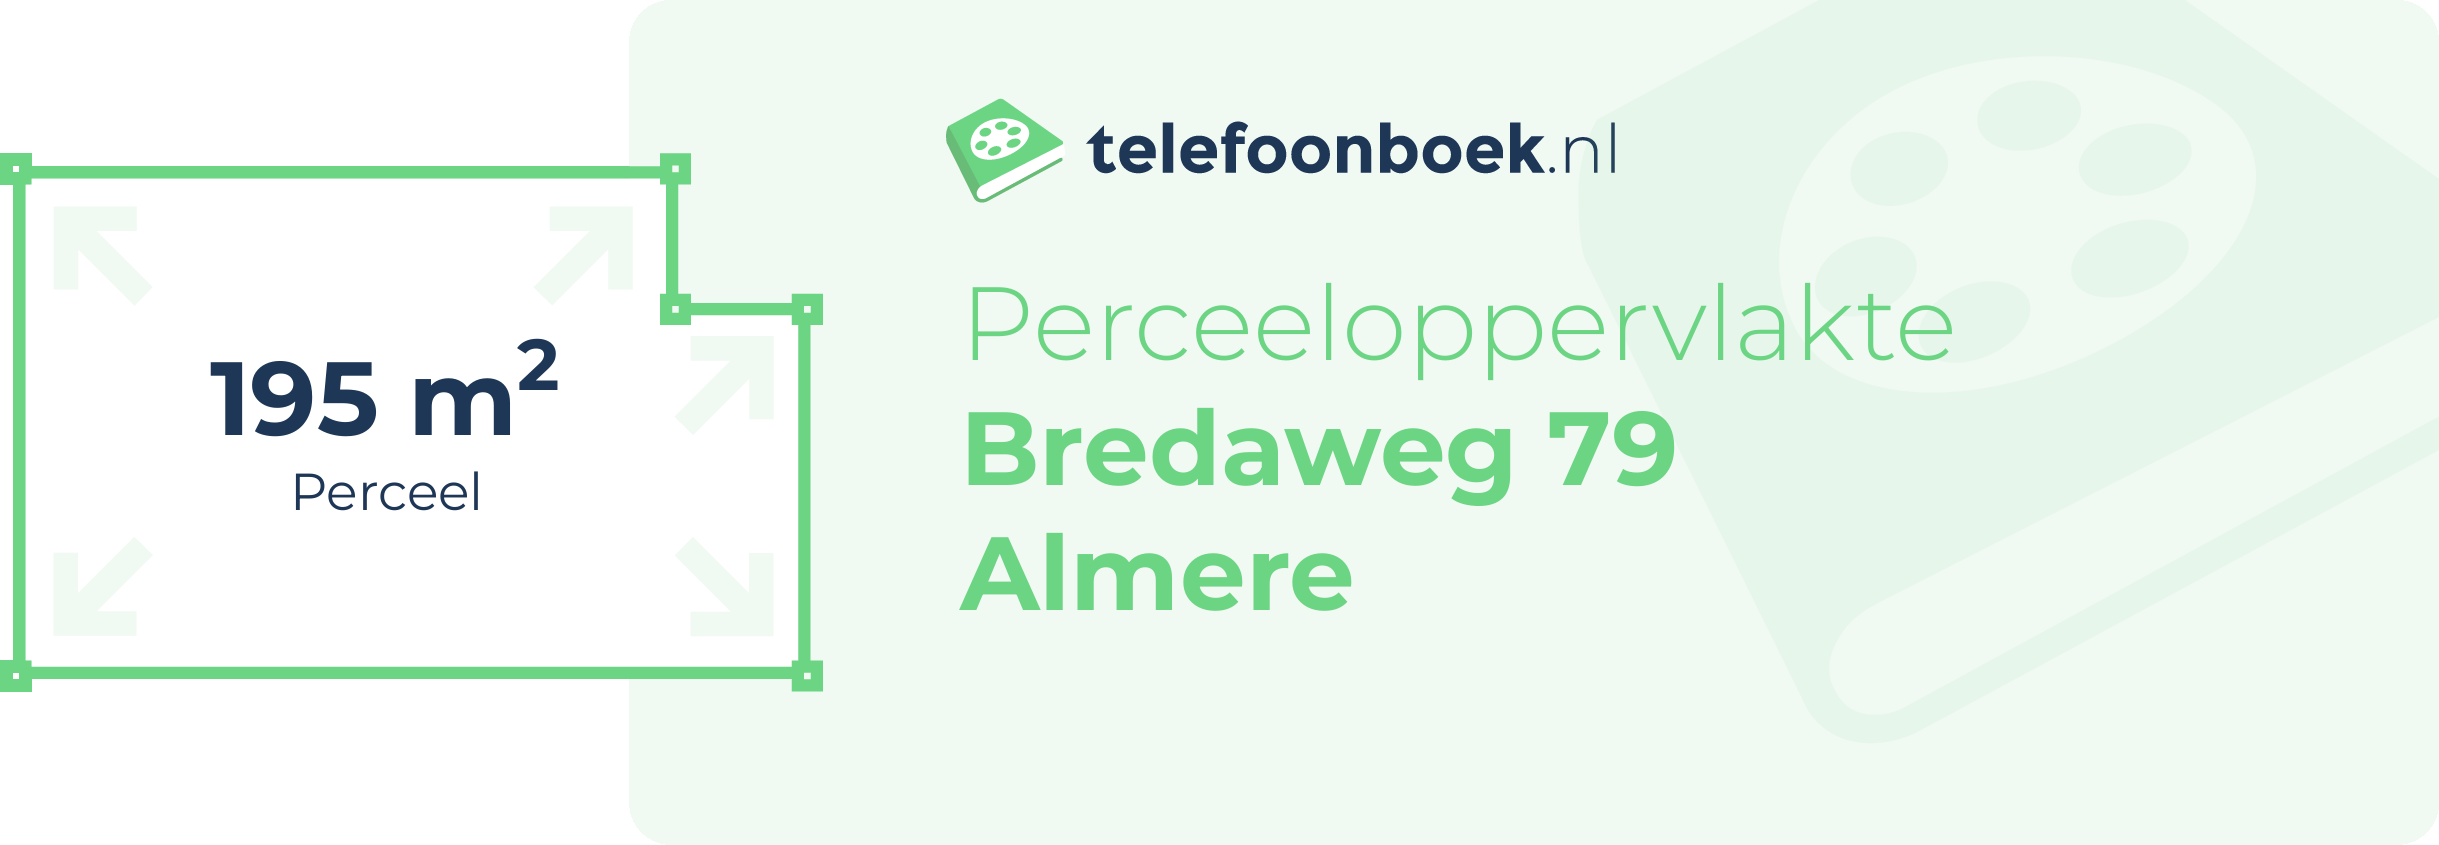 Perceeloppervlakte Bredaweg 79 Almere